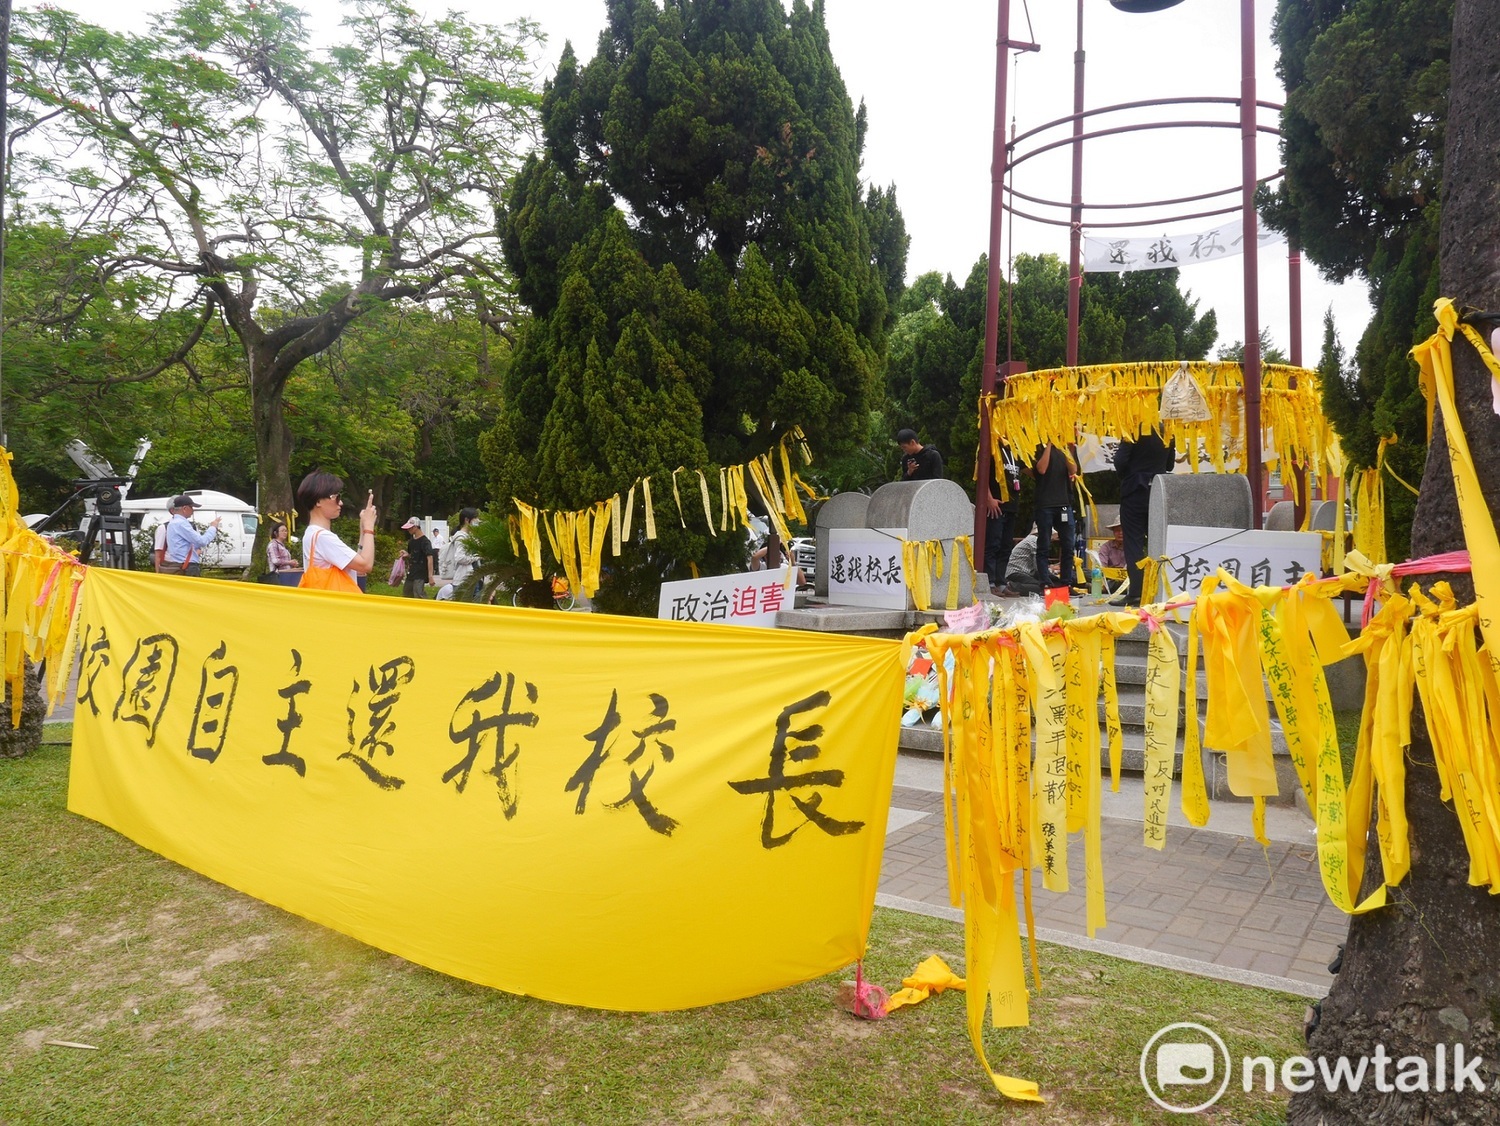 台大校園內黃絲帶抗議現場照片。